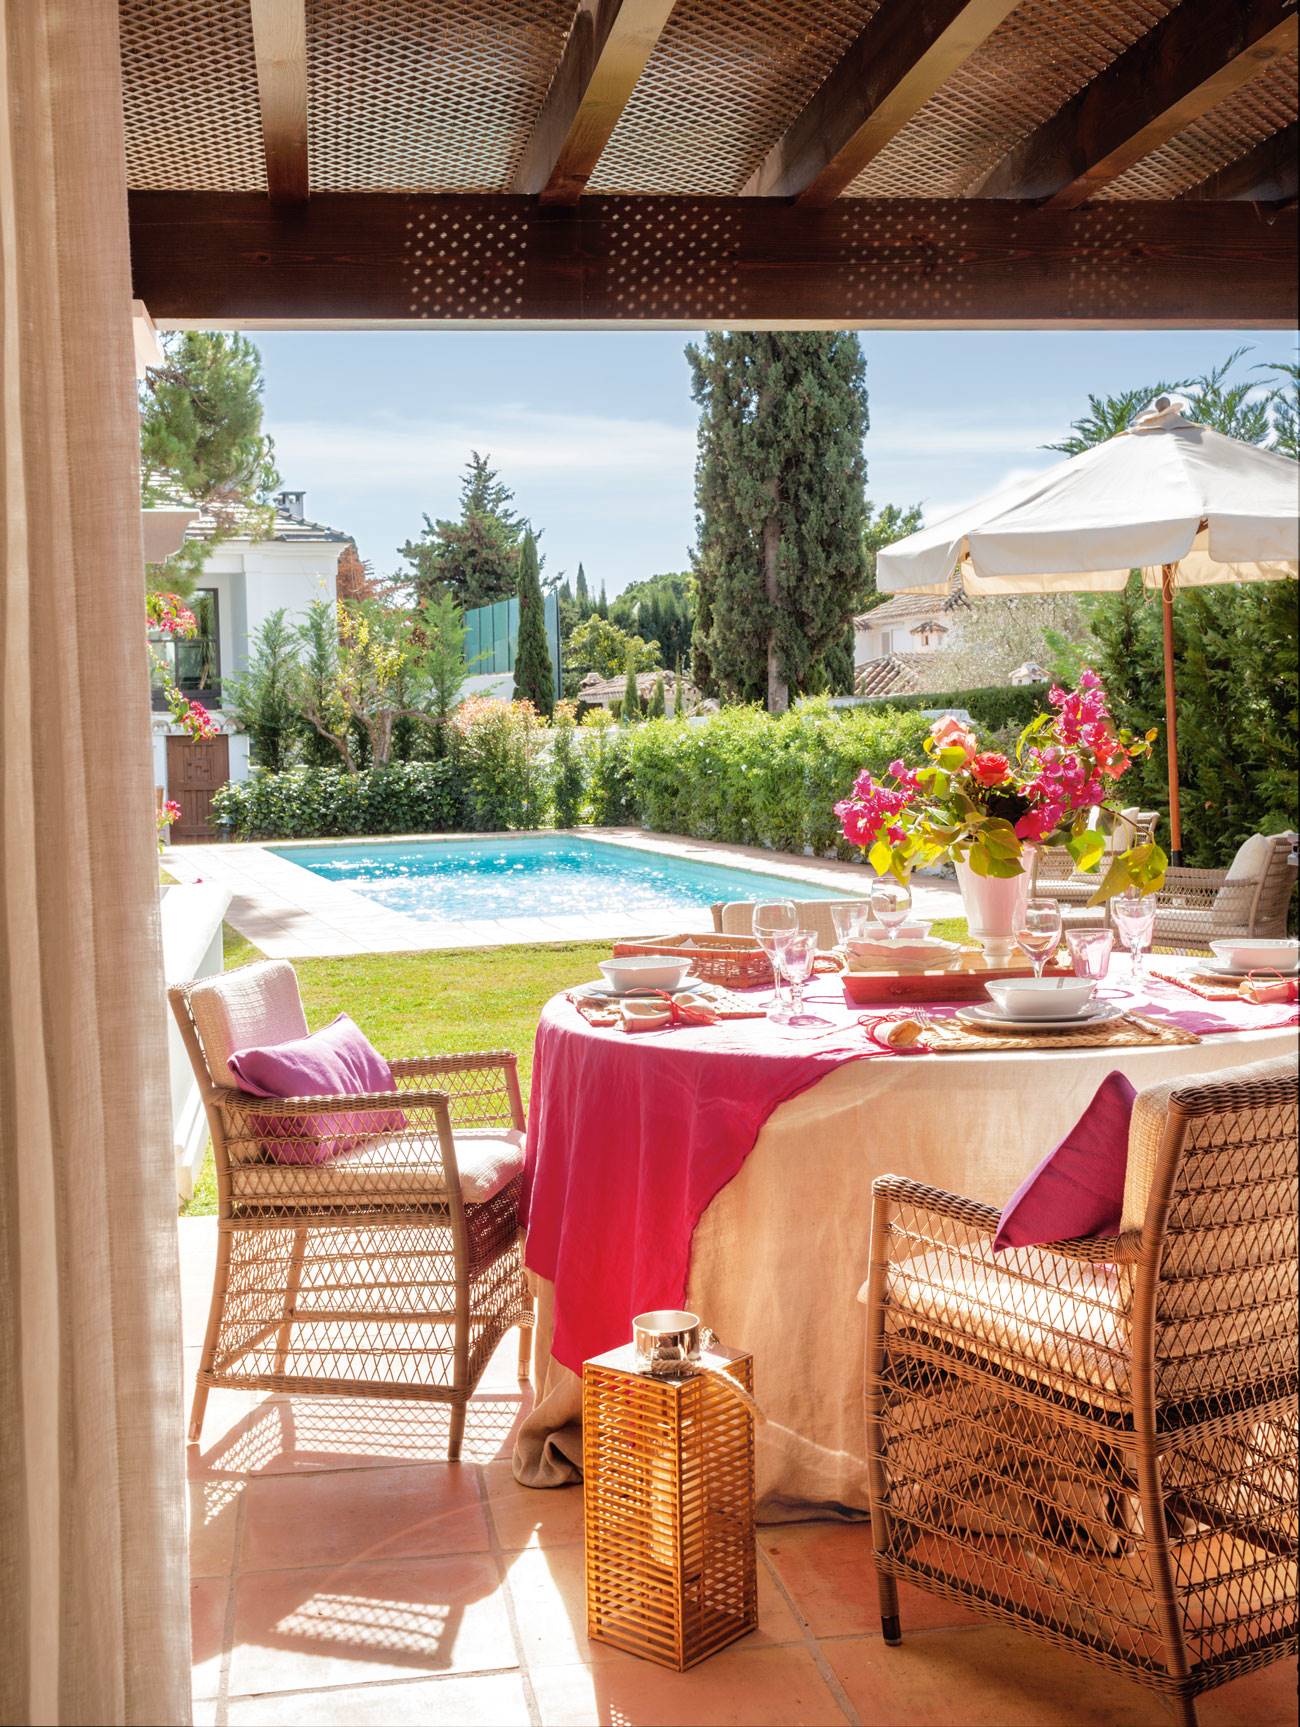 Comedor exterior junto a la piscina en tonos rosas y beige. 